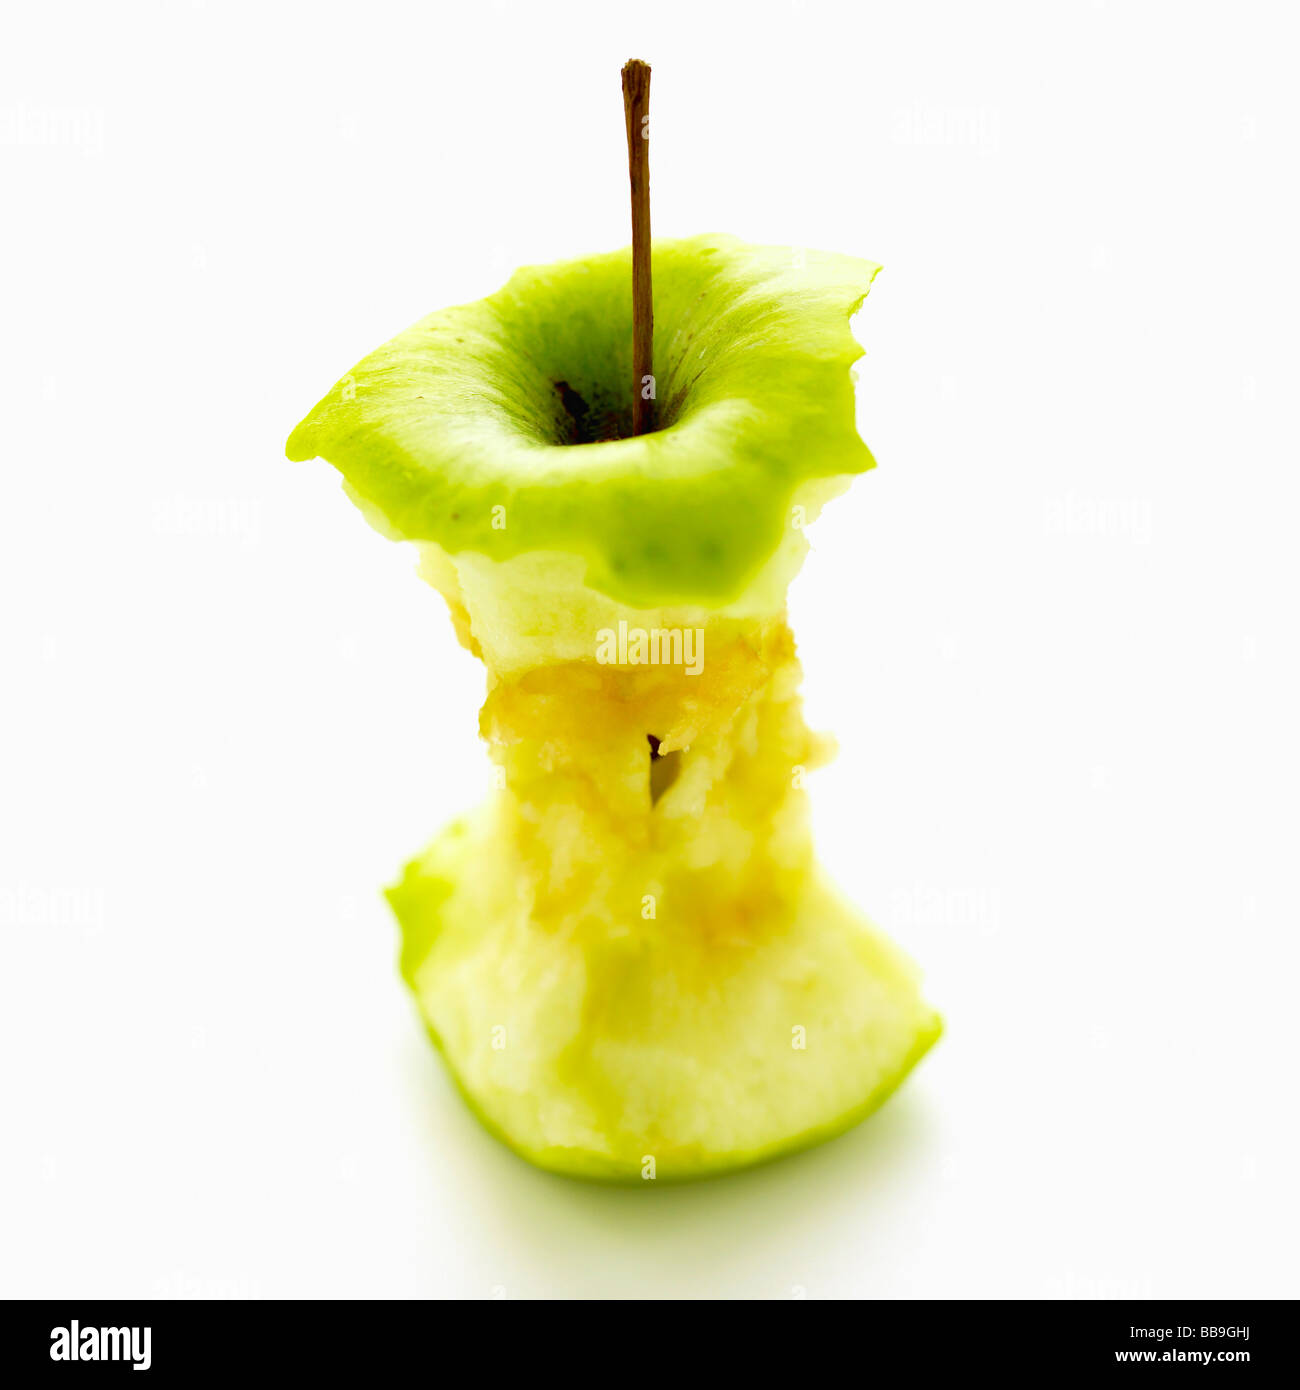 Un apple core isolato su uno sfondo bianco, shot con messa a fuoco poco profonda per sottolineare la forte forma grafica. Foto Stock